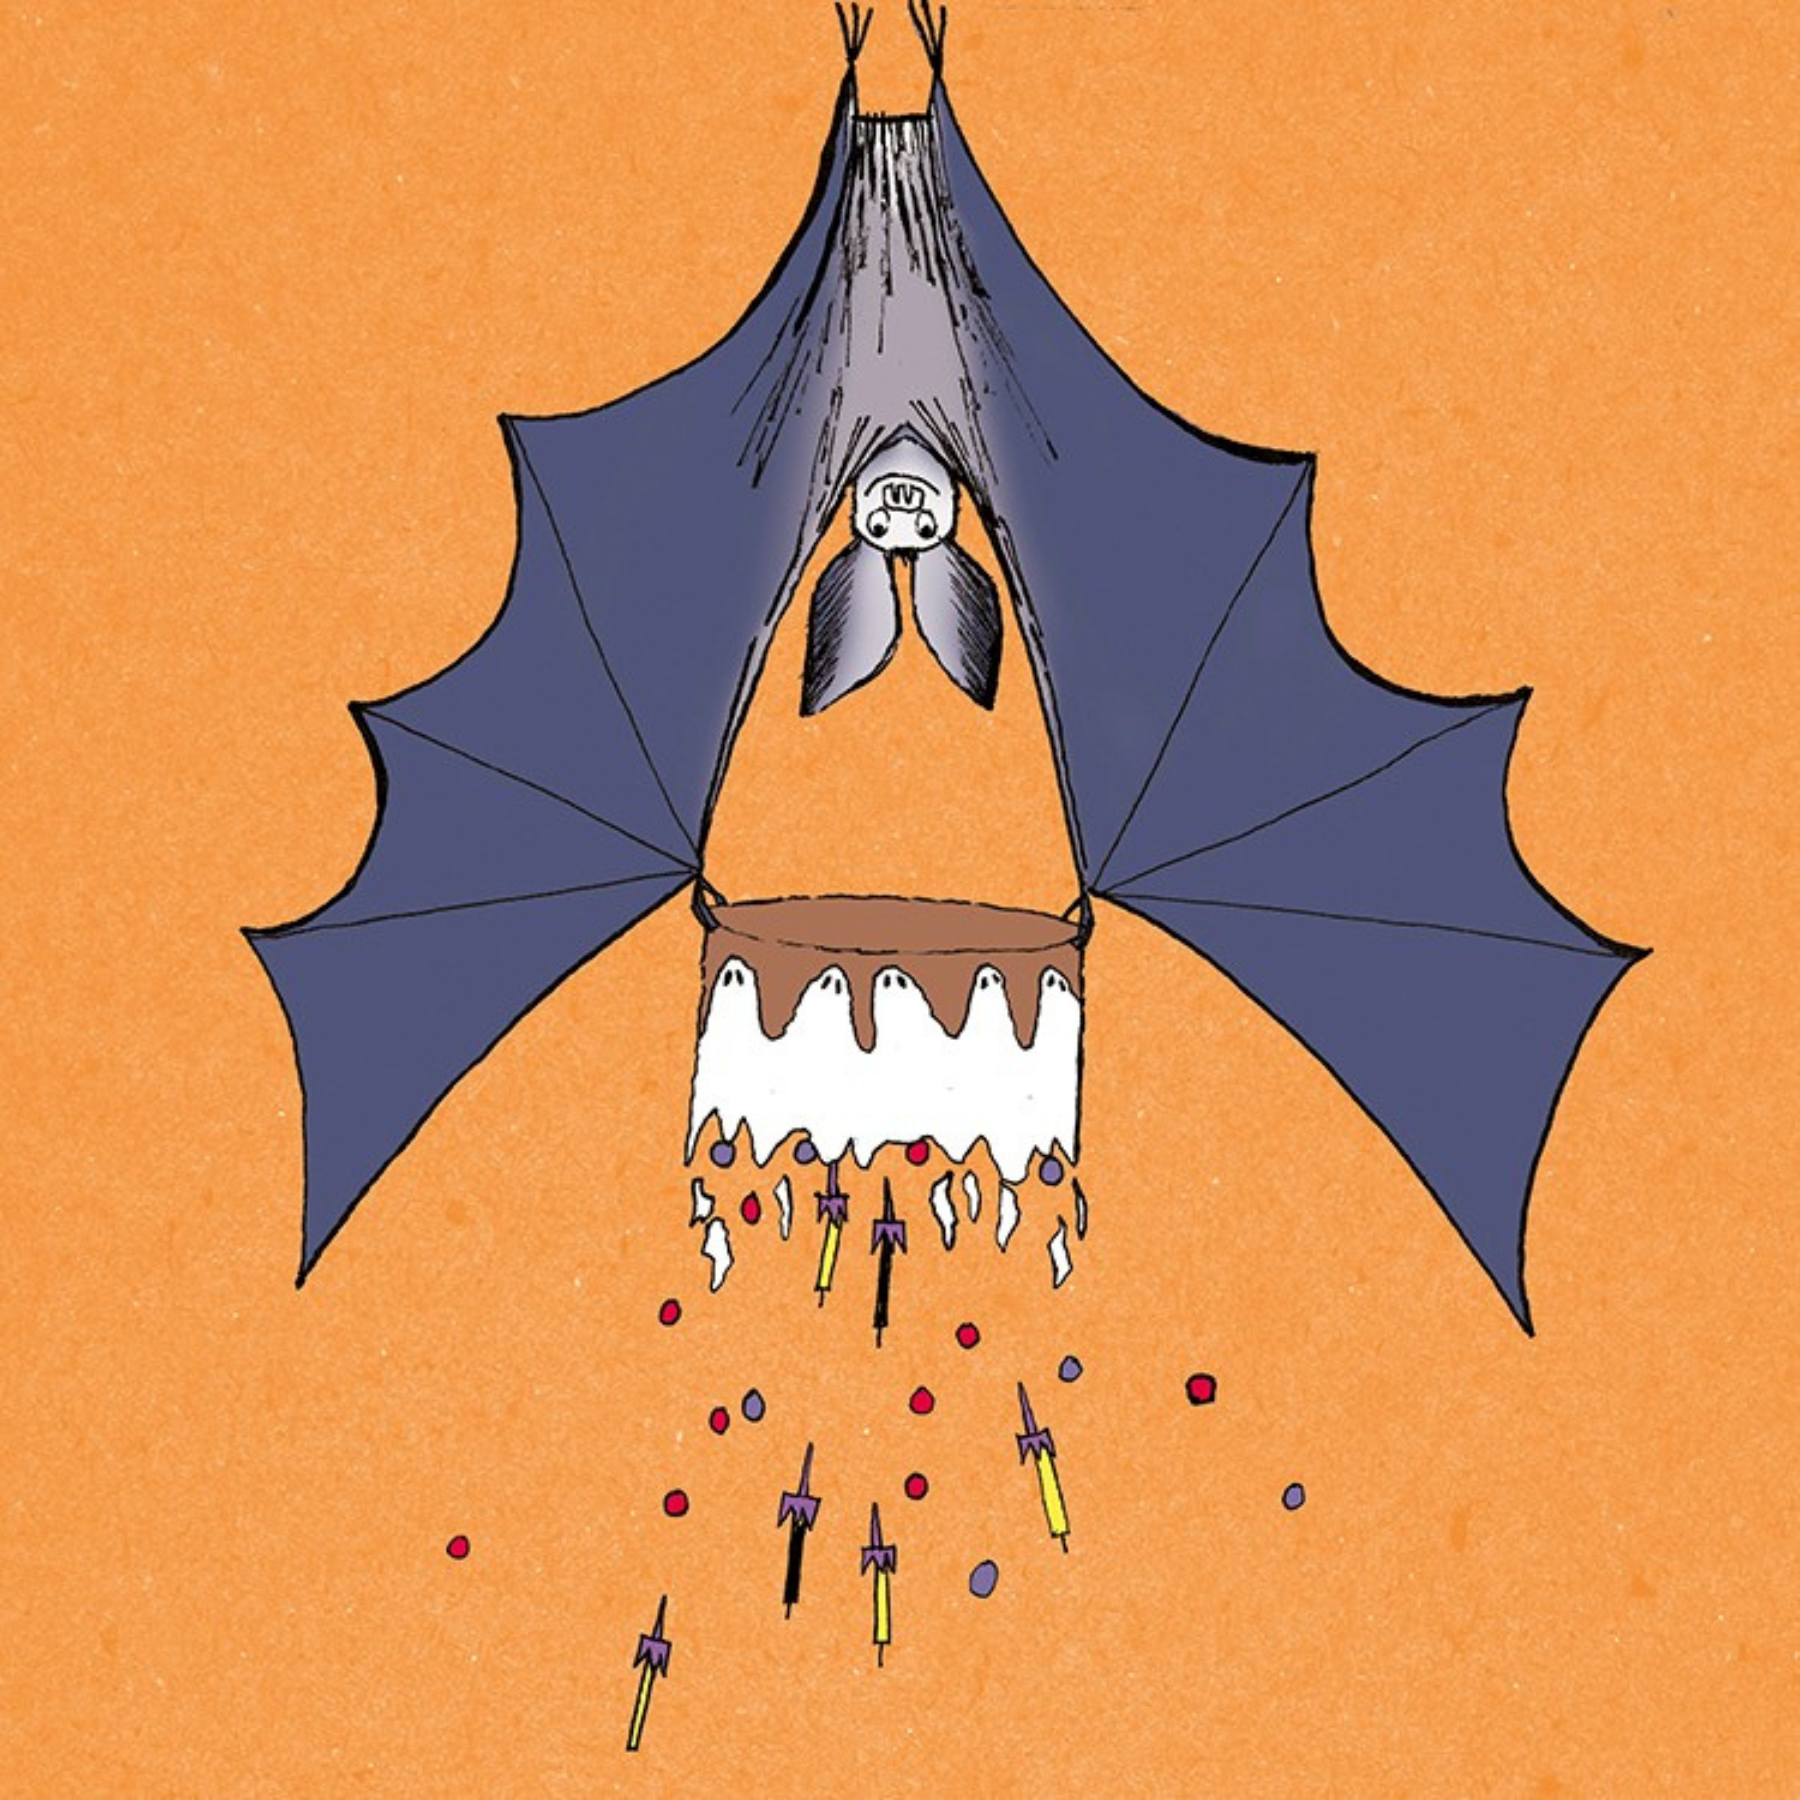 Bat's Upside-down Cake Greetings Card